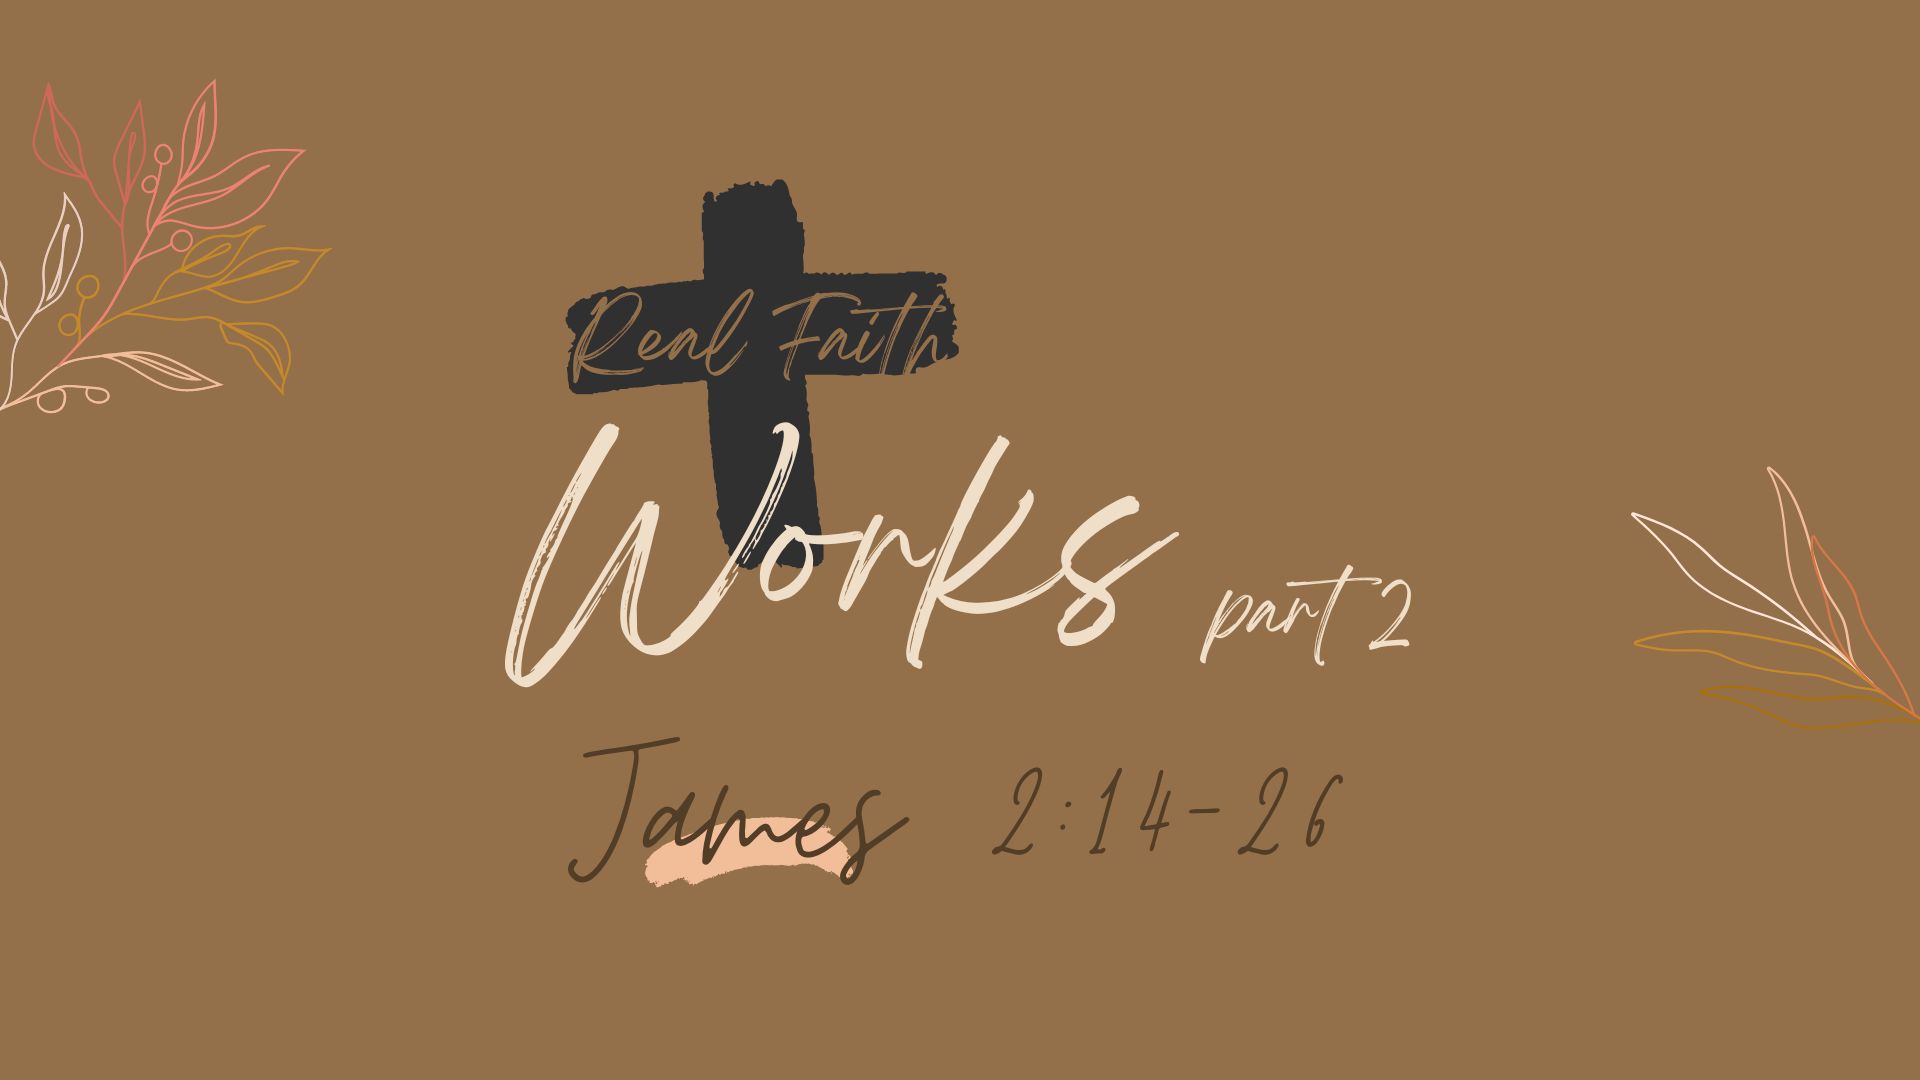 Real Faith 6 - Works Part 2